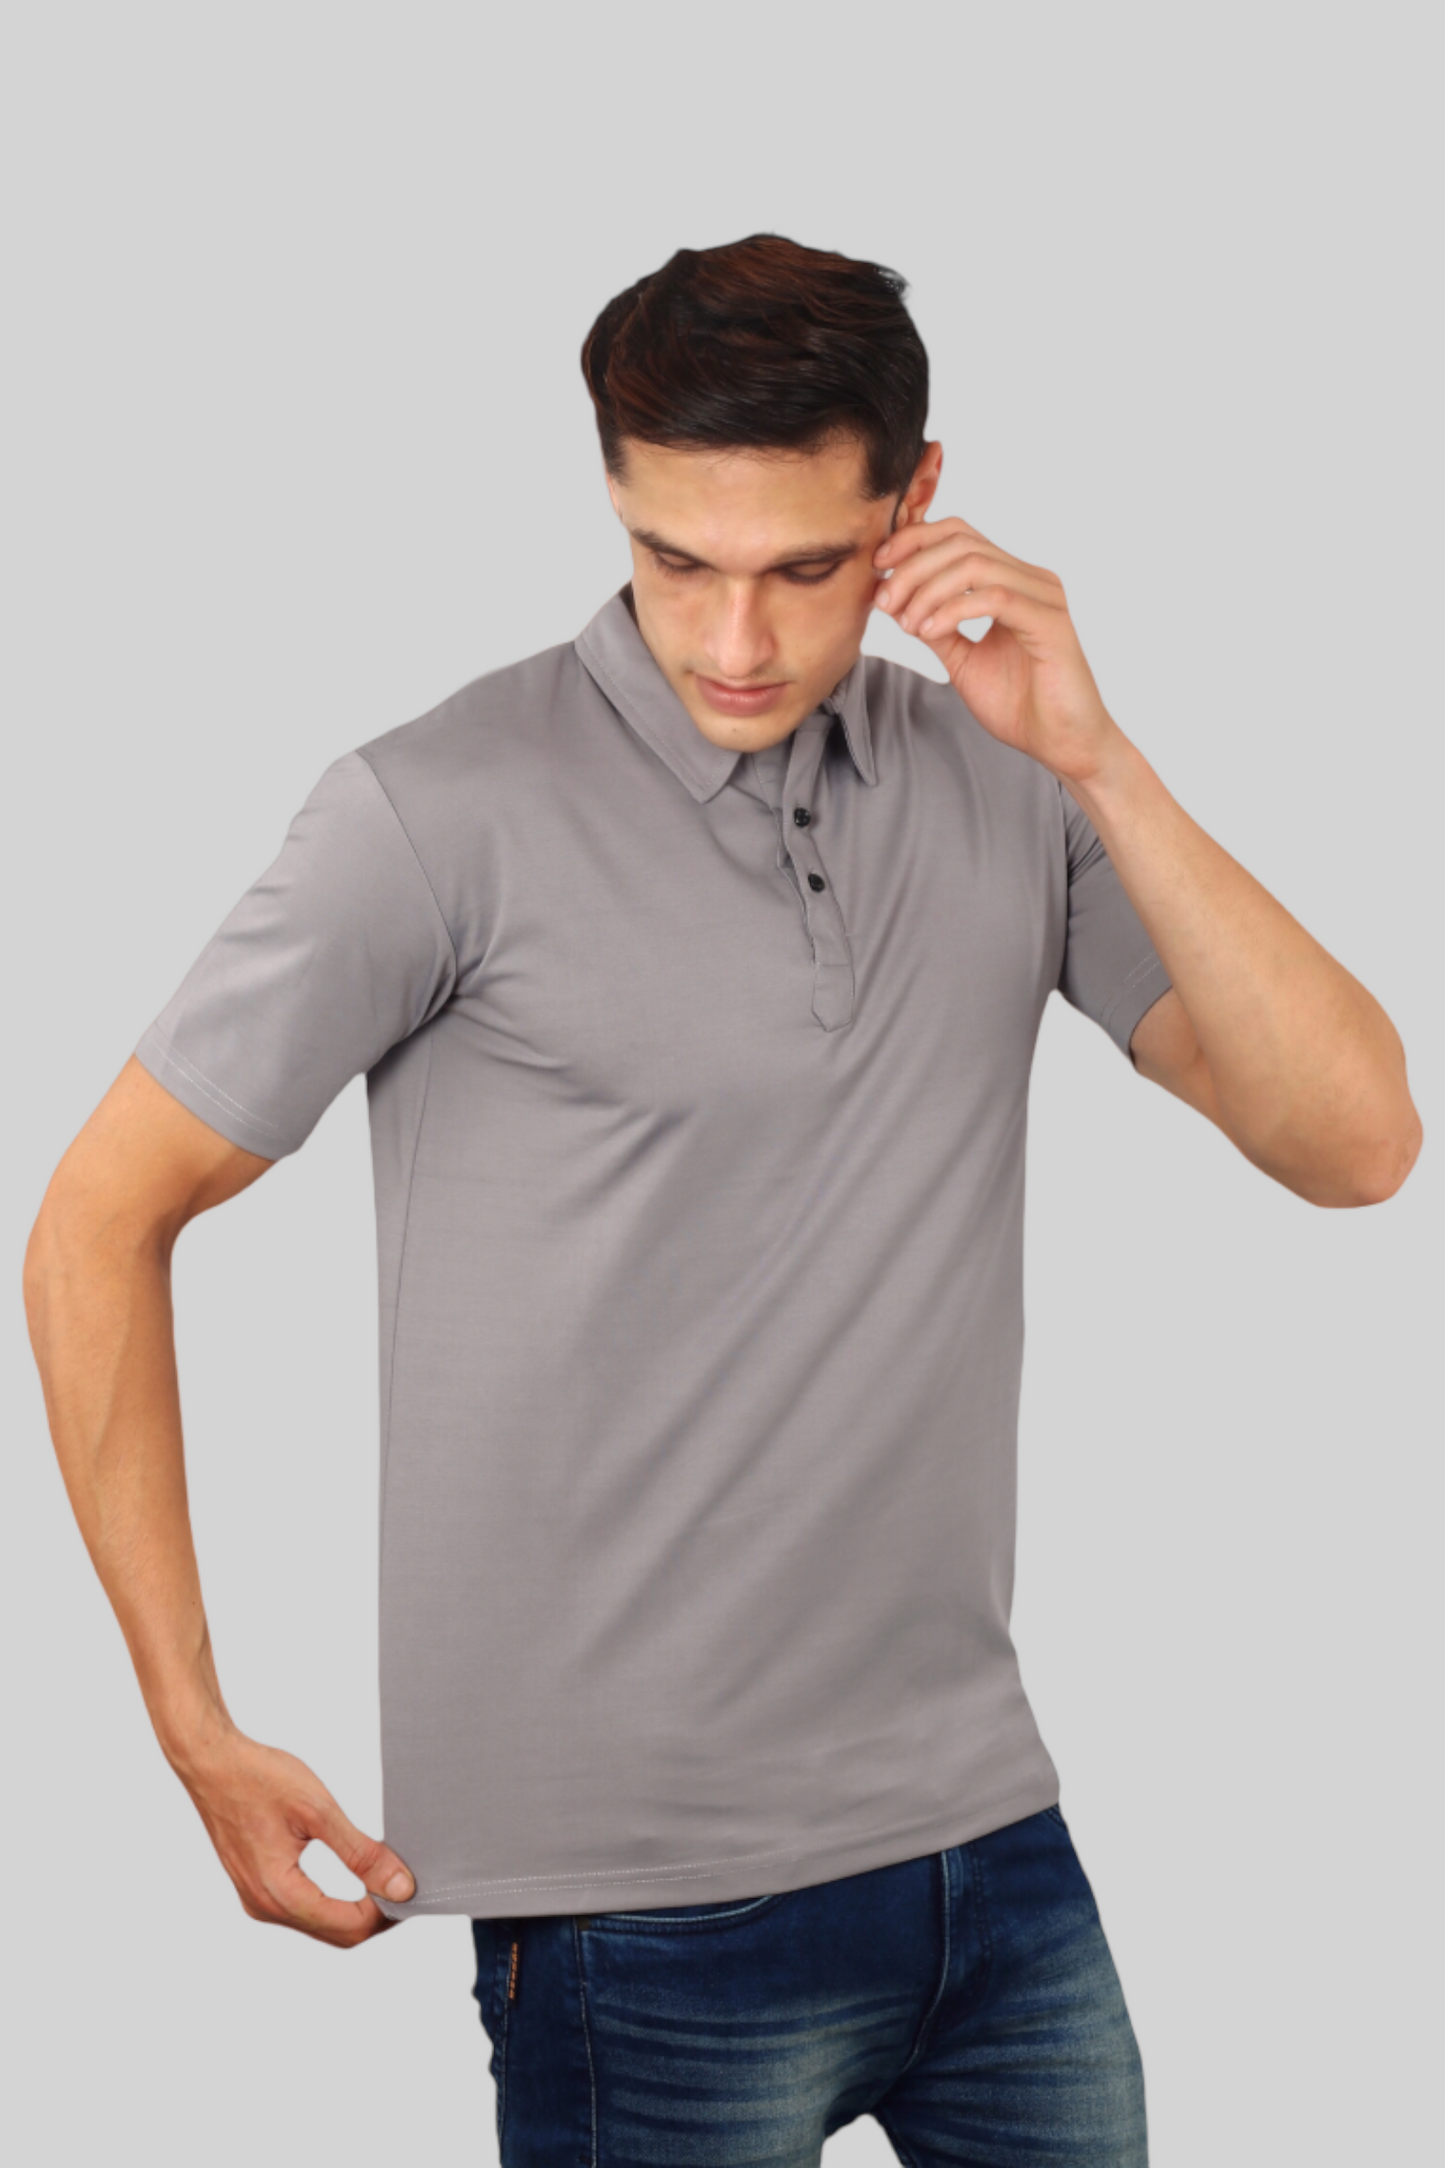 Grey Classic Italian Collar T-shirt for men